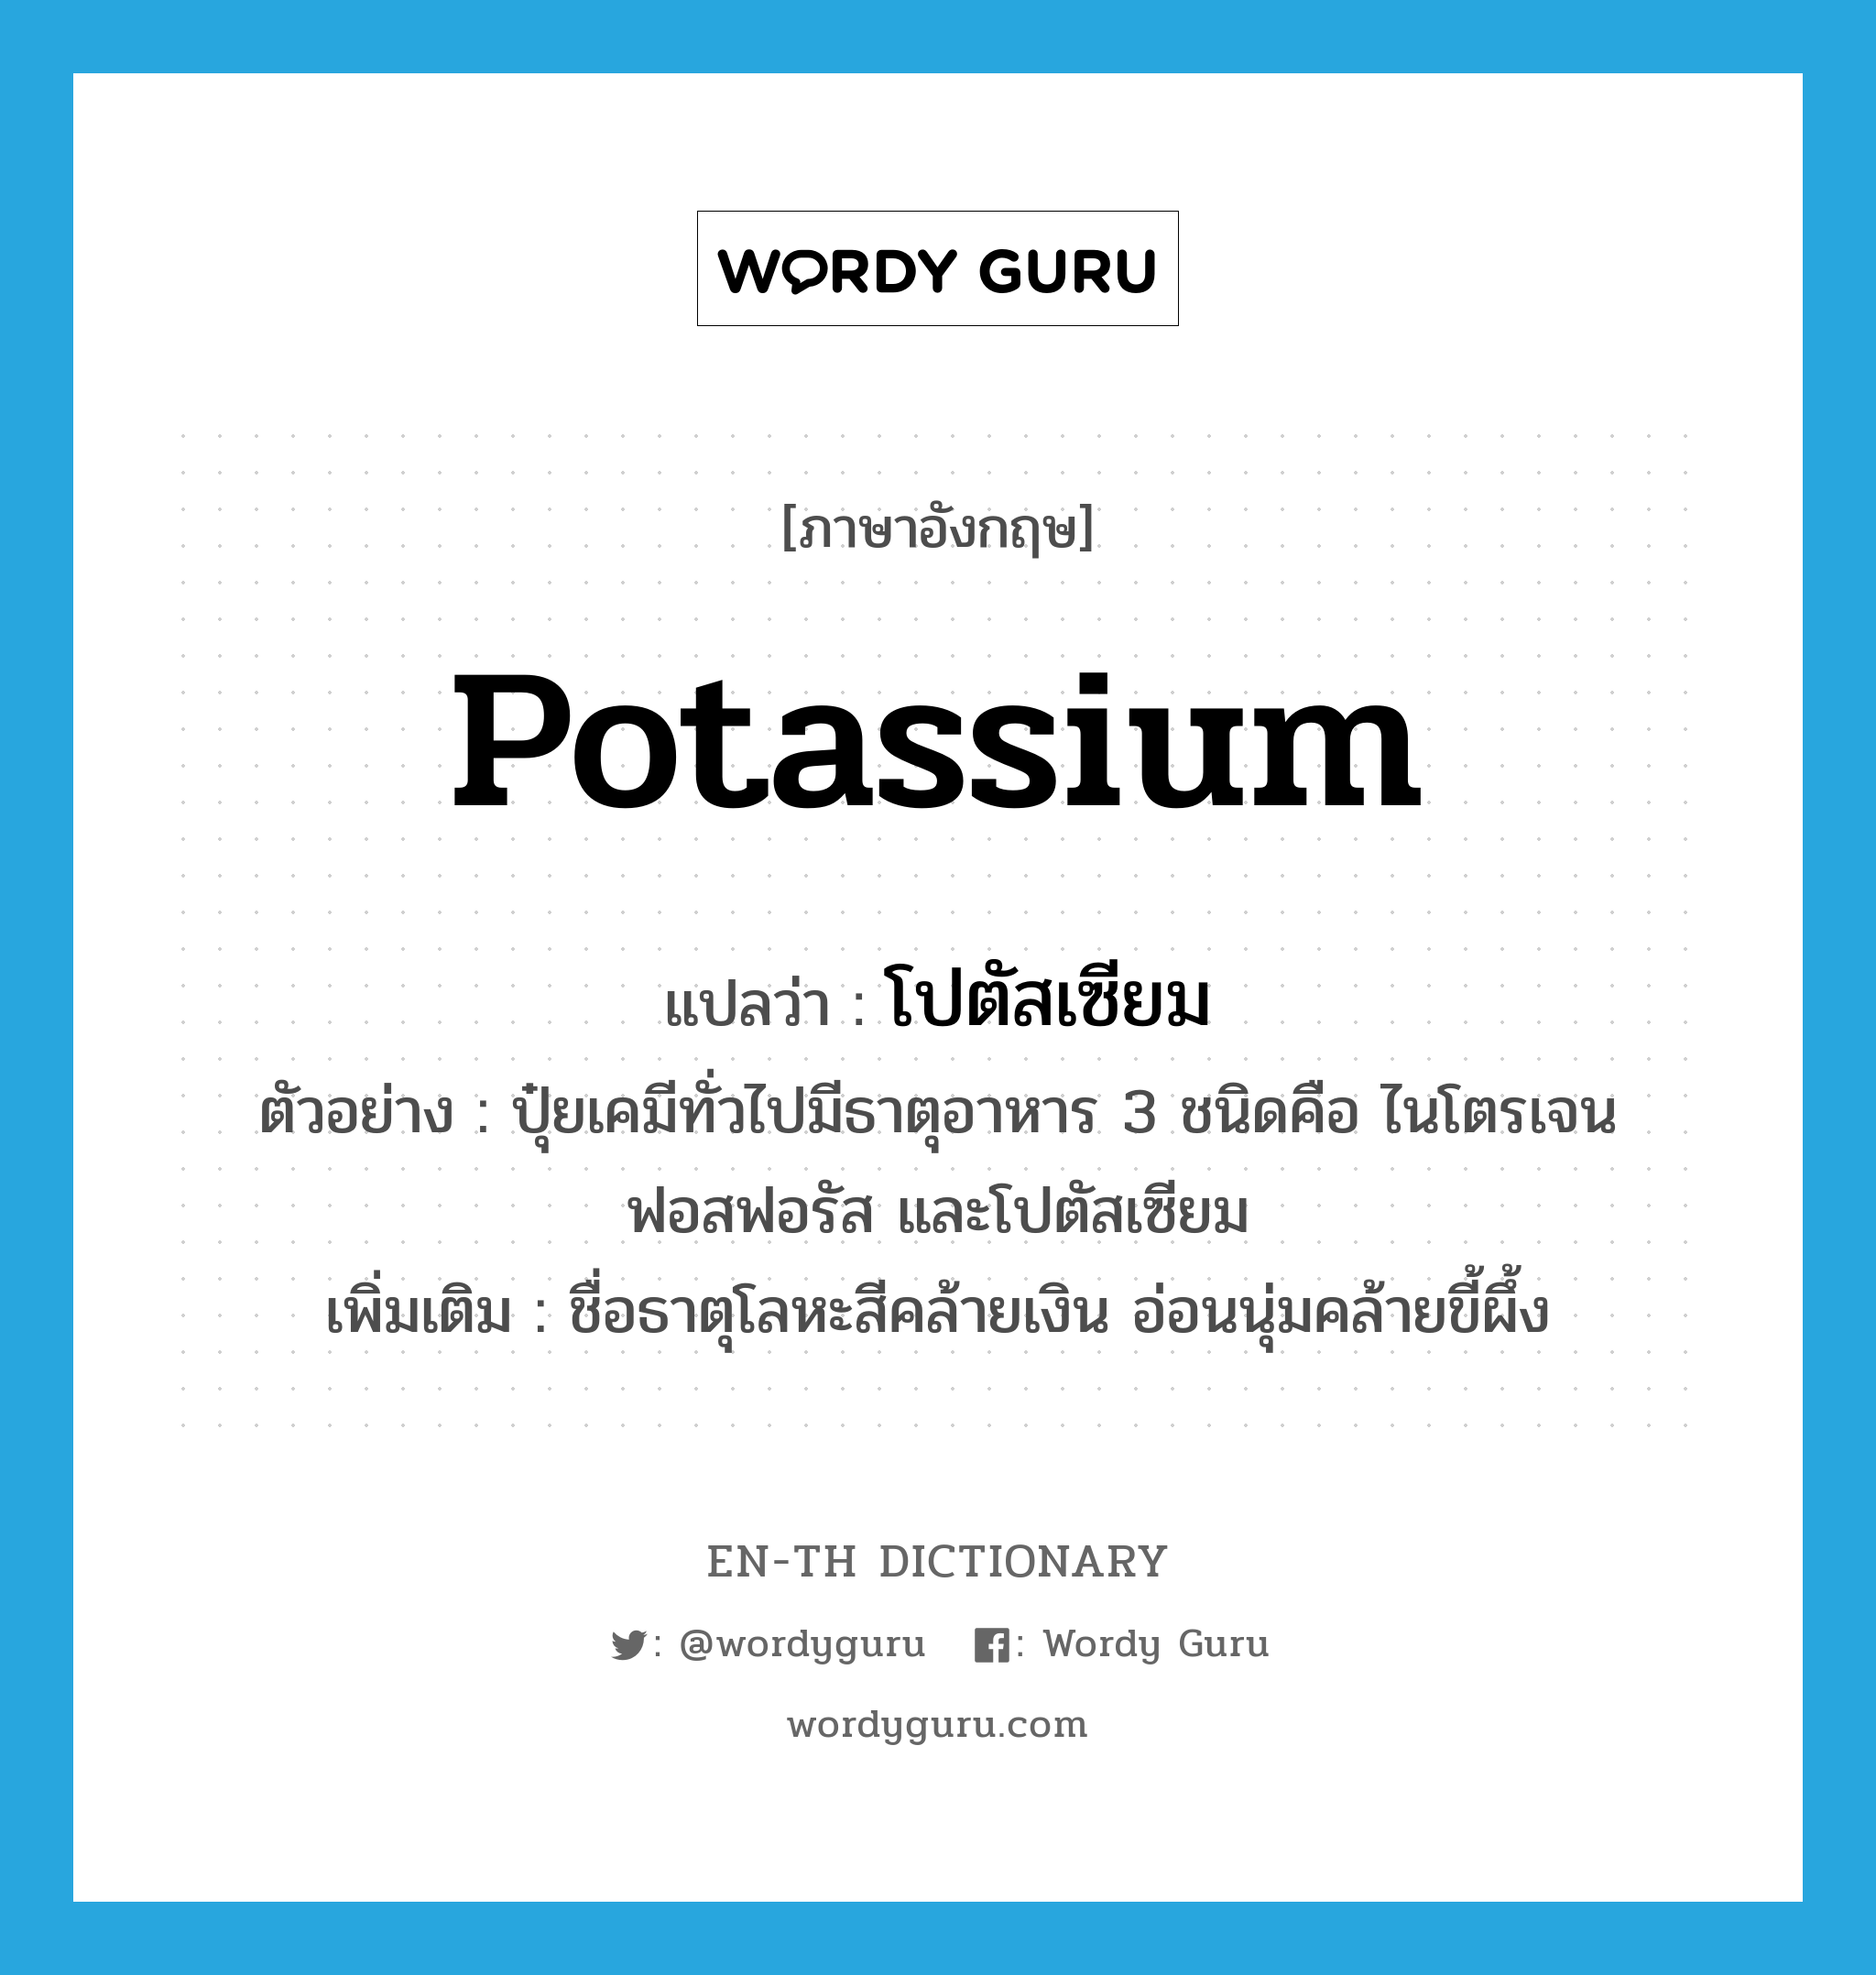 potassium แปลว่า?, คำศัพท์ภาษาอังกฤษ potassium แปลว่า โปตัสเซียม ประเภท N ตัวอย่าง ปุ๋ยเคมีทั่วไปมีธาตุอาหาร 3 ชนิดคือ ไนโตรเจน ฟอสฟอรัส และโปตัสเซียม เพิ่มเติม ชื่อธาตุโลหะสีคล้ายเงิน อ่อนนุ่มคล้ายขี้ผึ้ง หมวด N